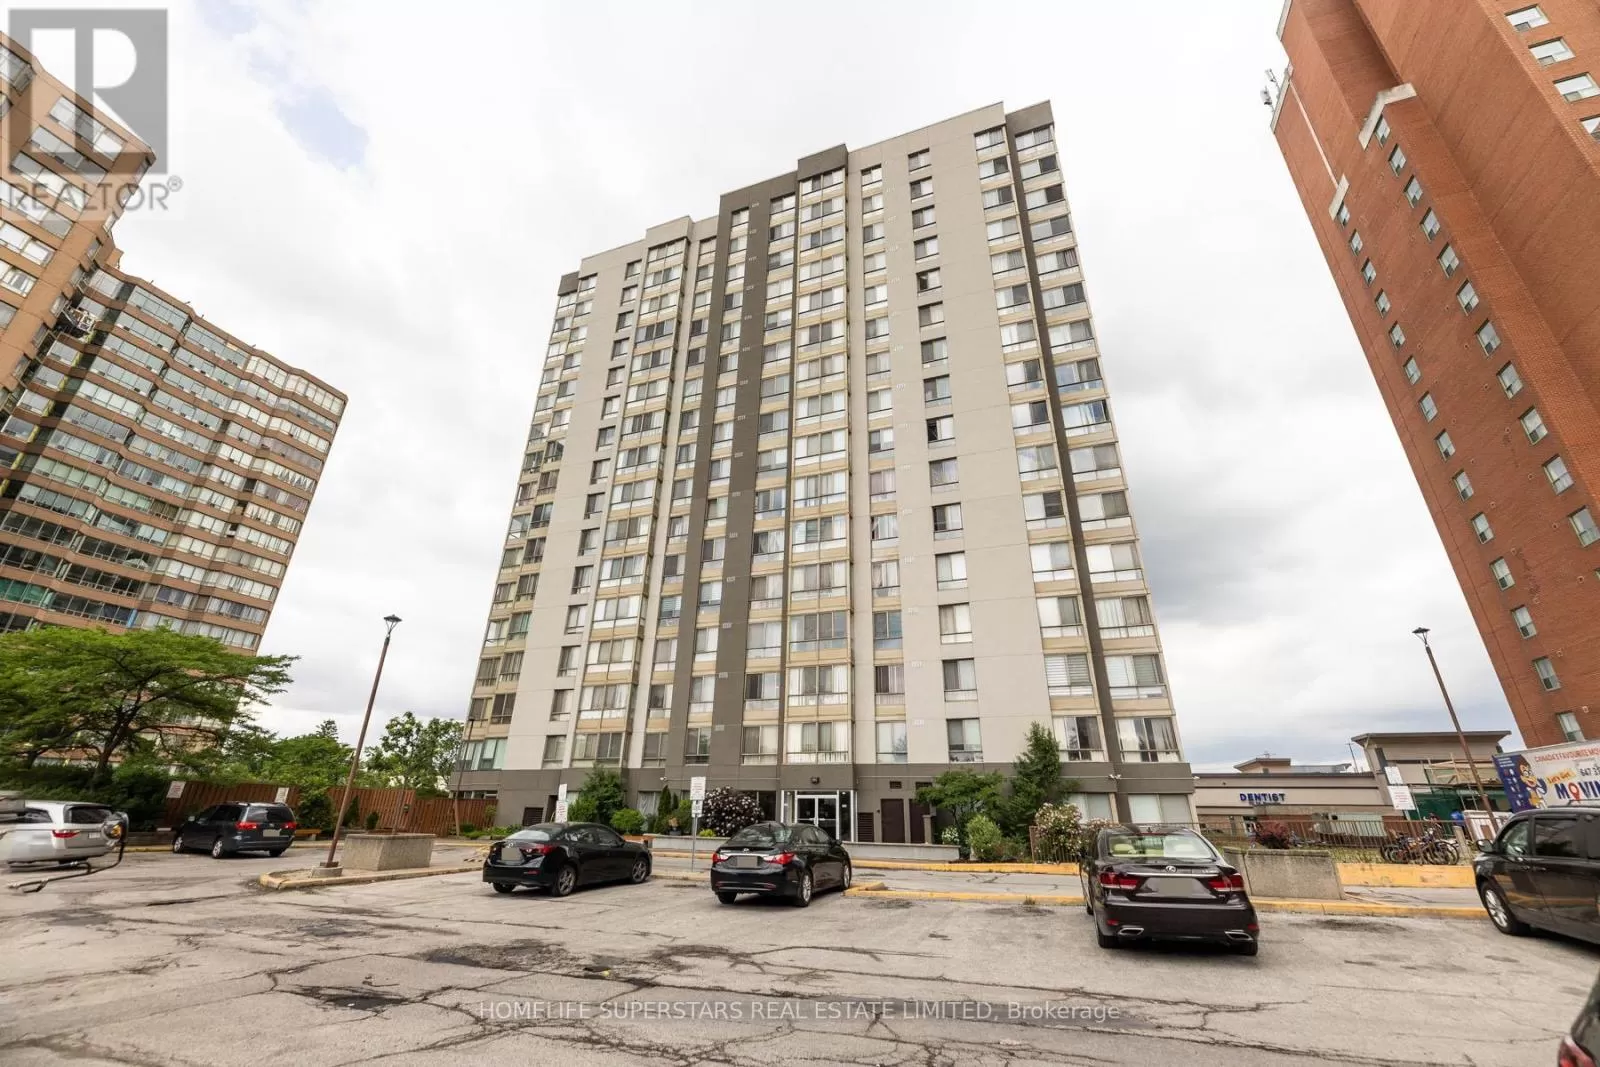 Apartment for rent: 1502 - 2470 Eglinton Avenue W, Toronto, Ontario M6M 5E7